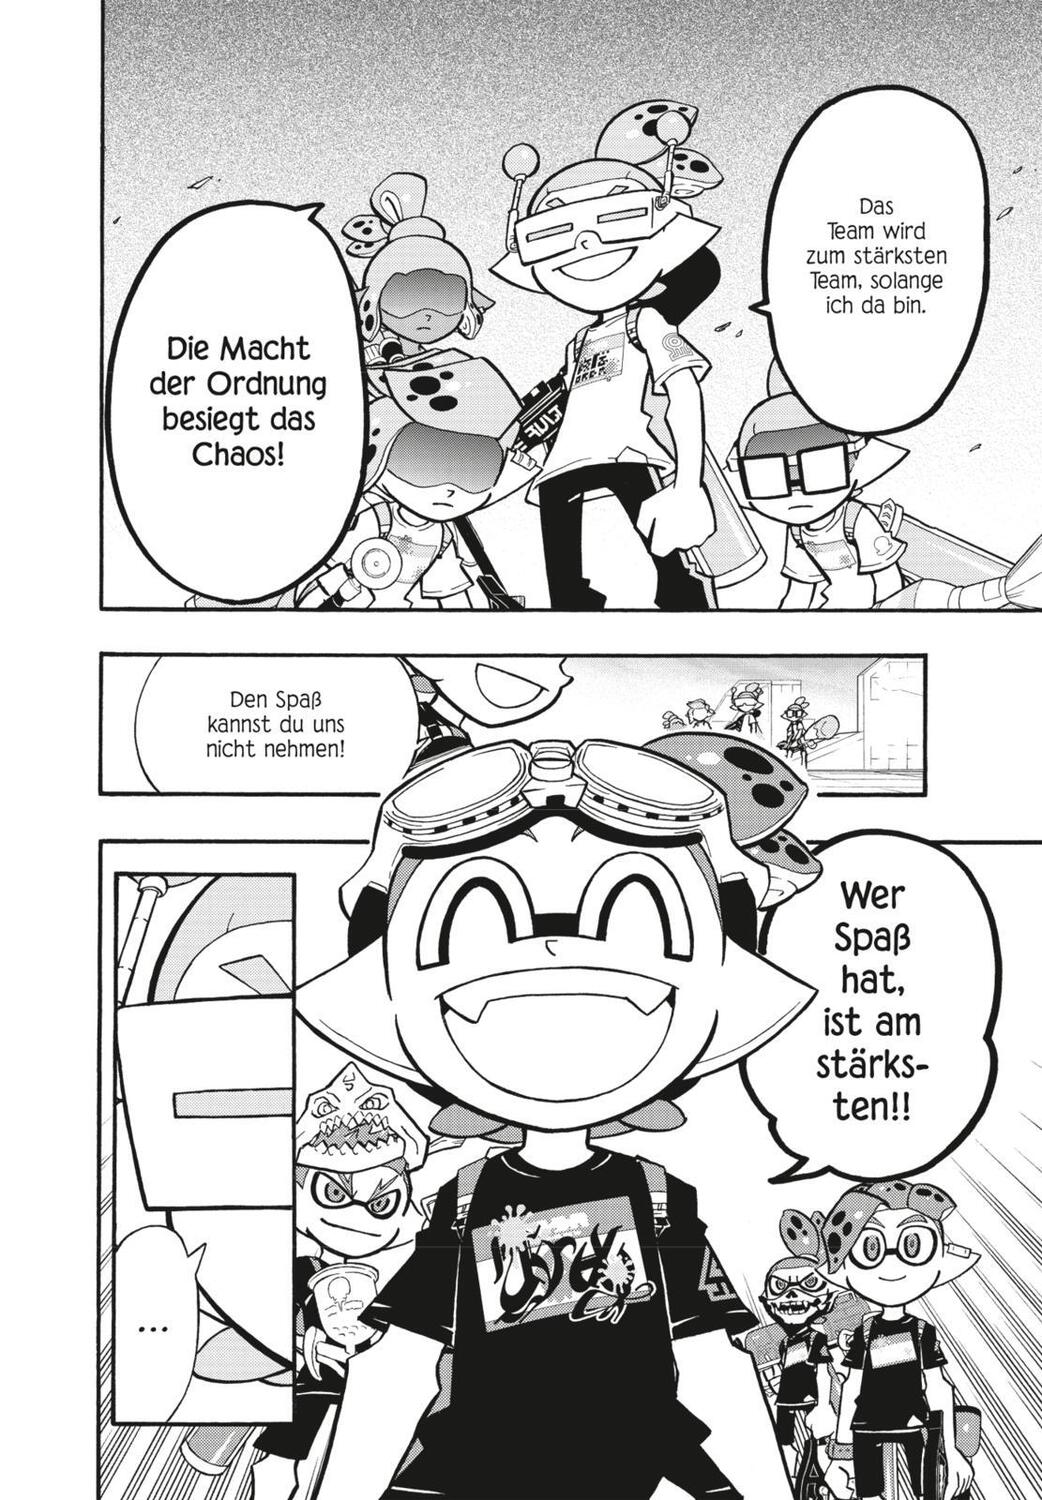 Bild: 9783551793904 | Splatoon 14 | Das Nintendo-Game als Manga! Ideal für Kinder und Gamer!